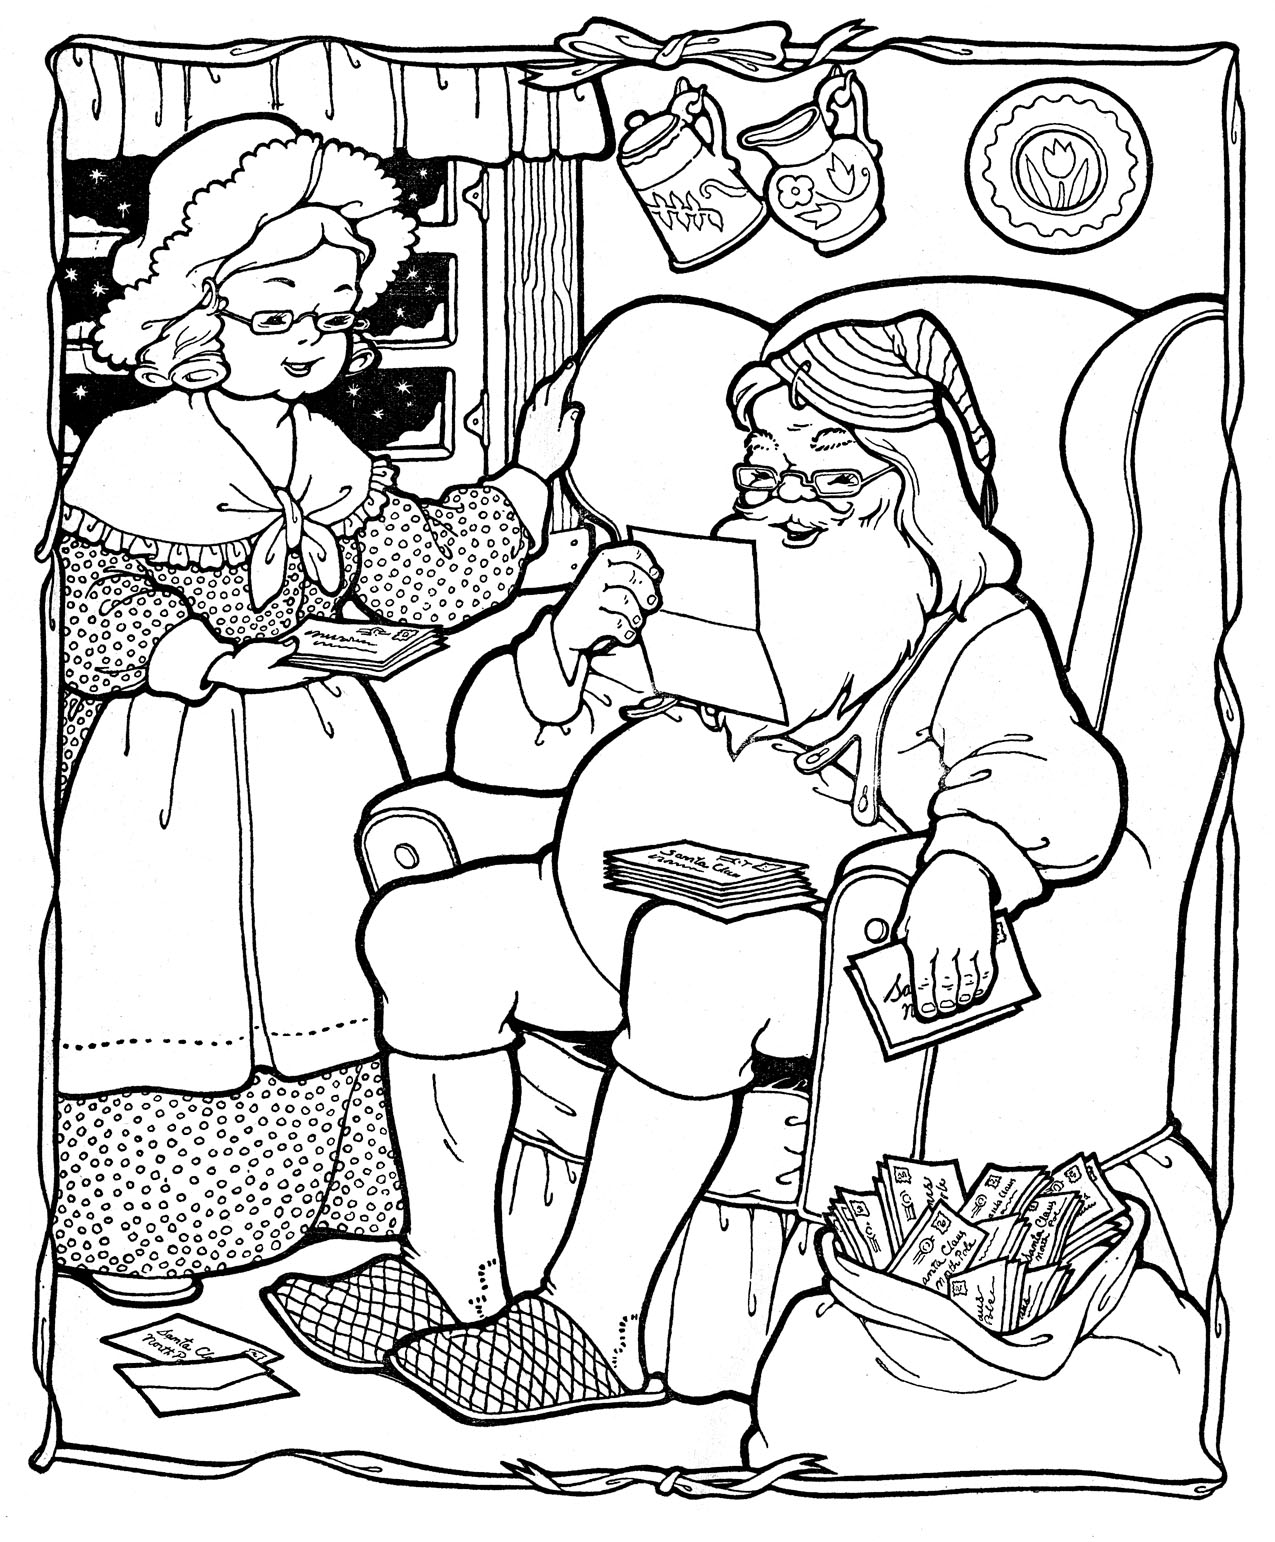 Kids Printable - Santa Coloring Page - Christmas - The ...